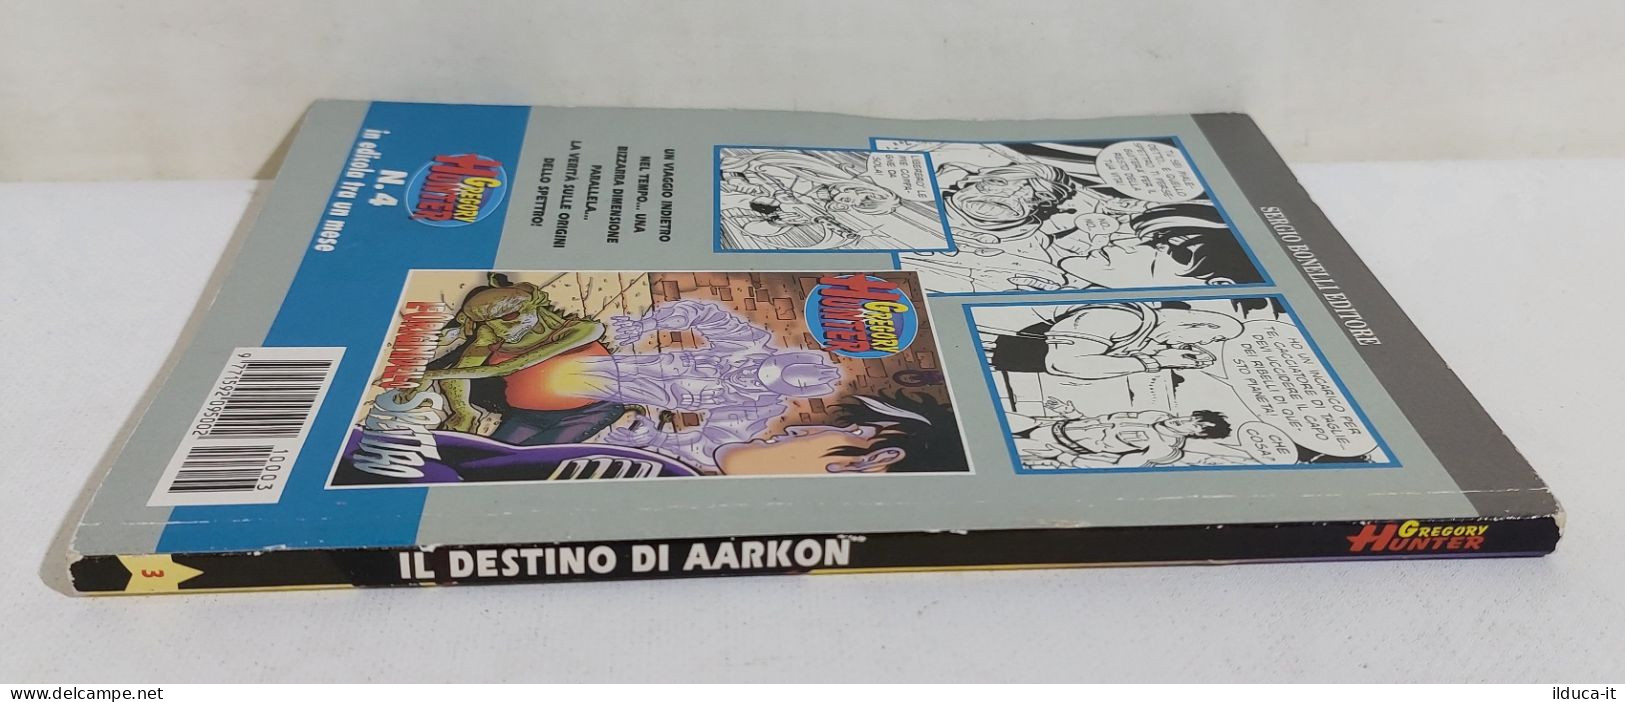 I113775 Gregory Hunter N. 3 - Il Destino Di Aarkon - Bonelli 2001 - Bonelli